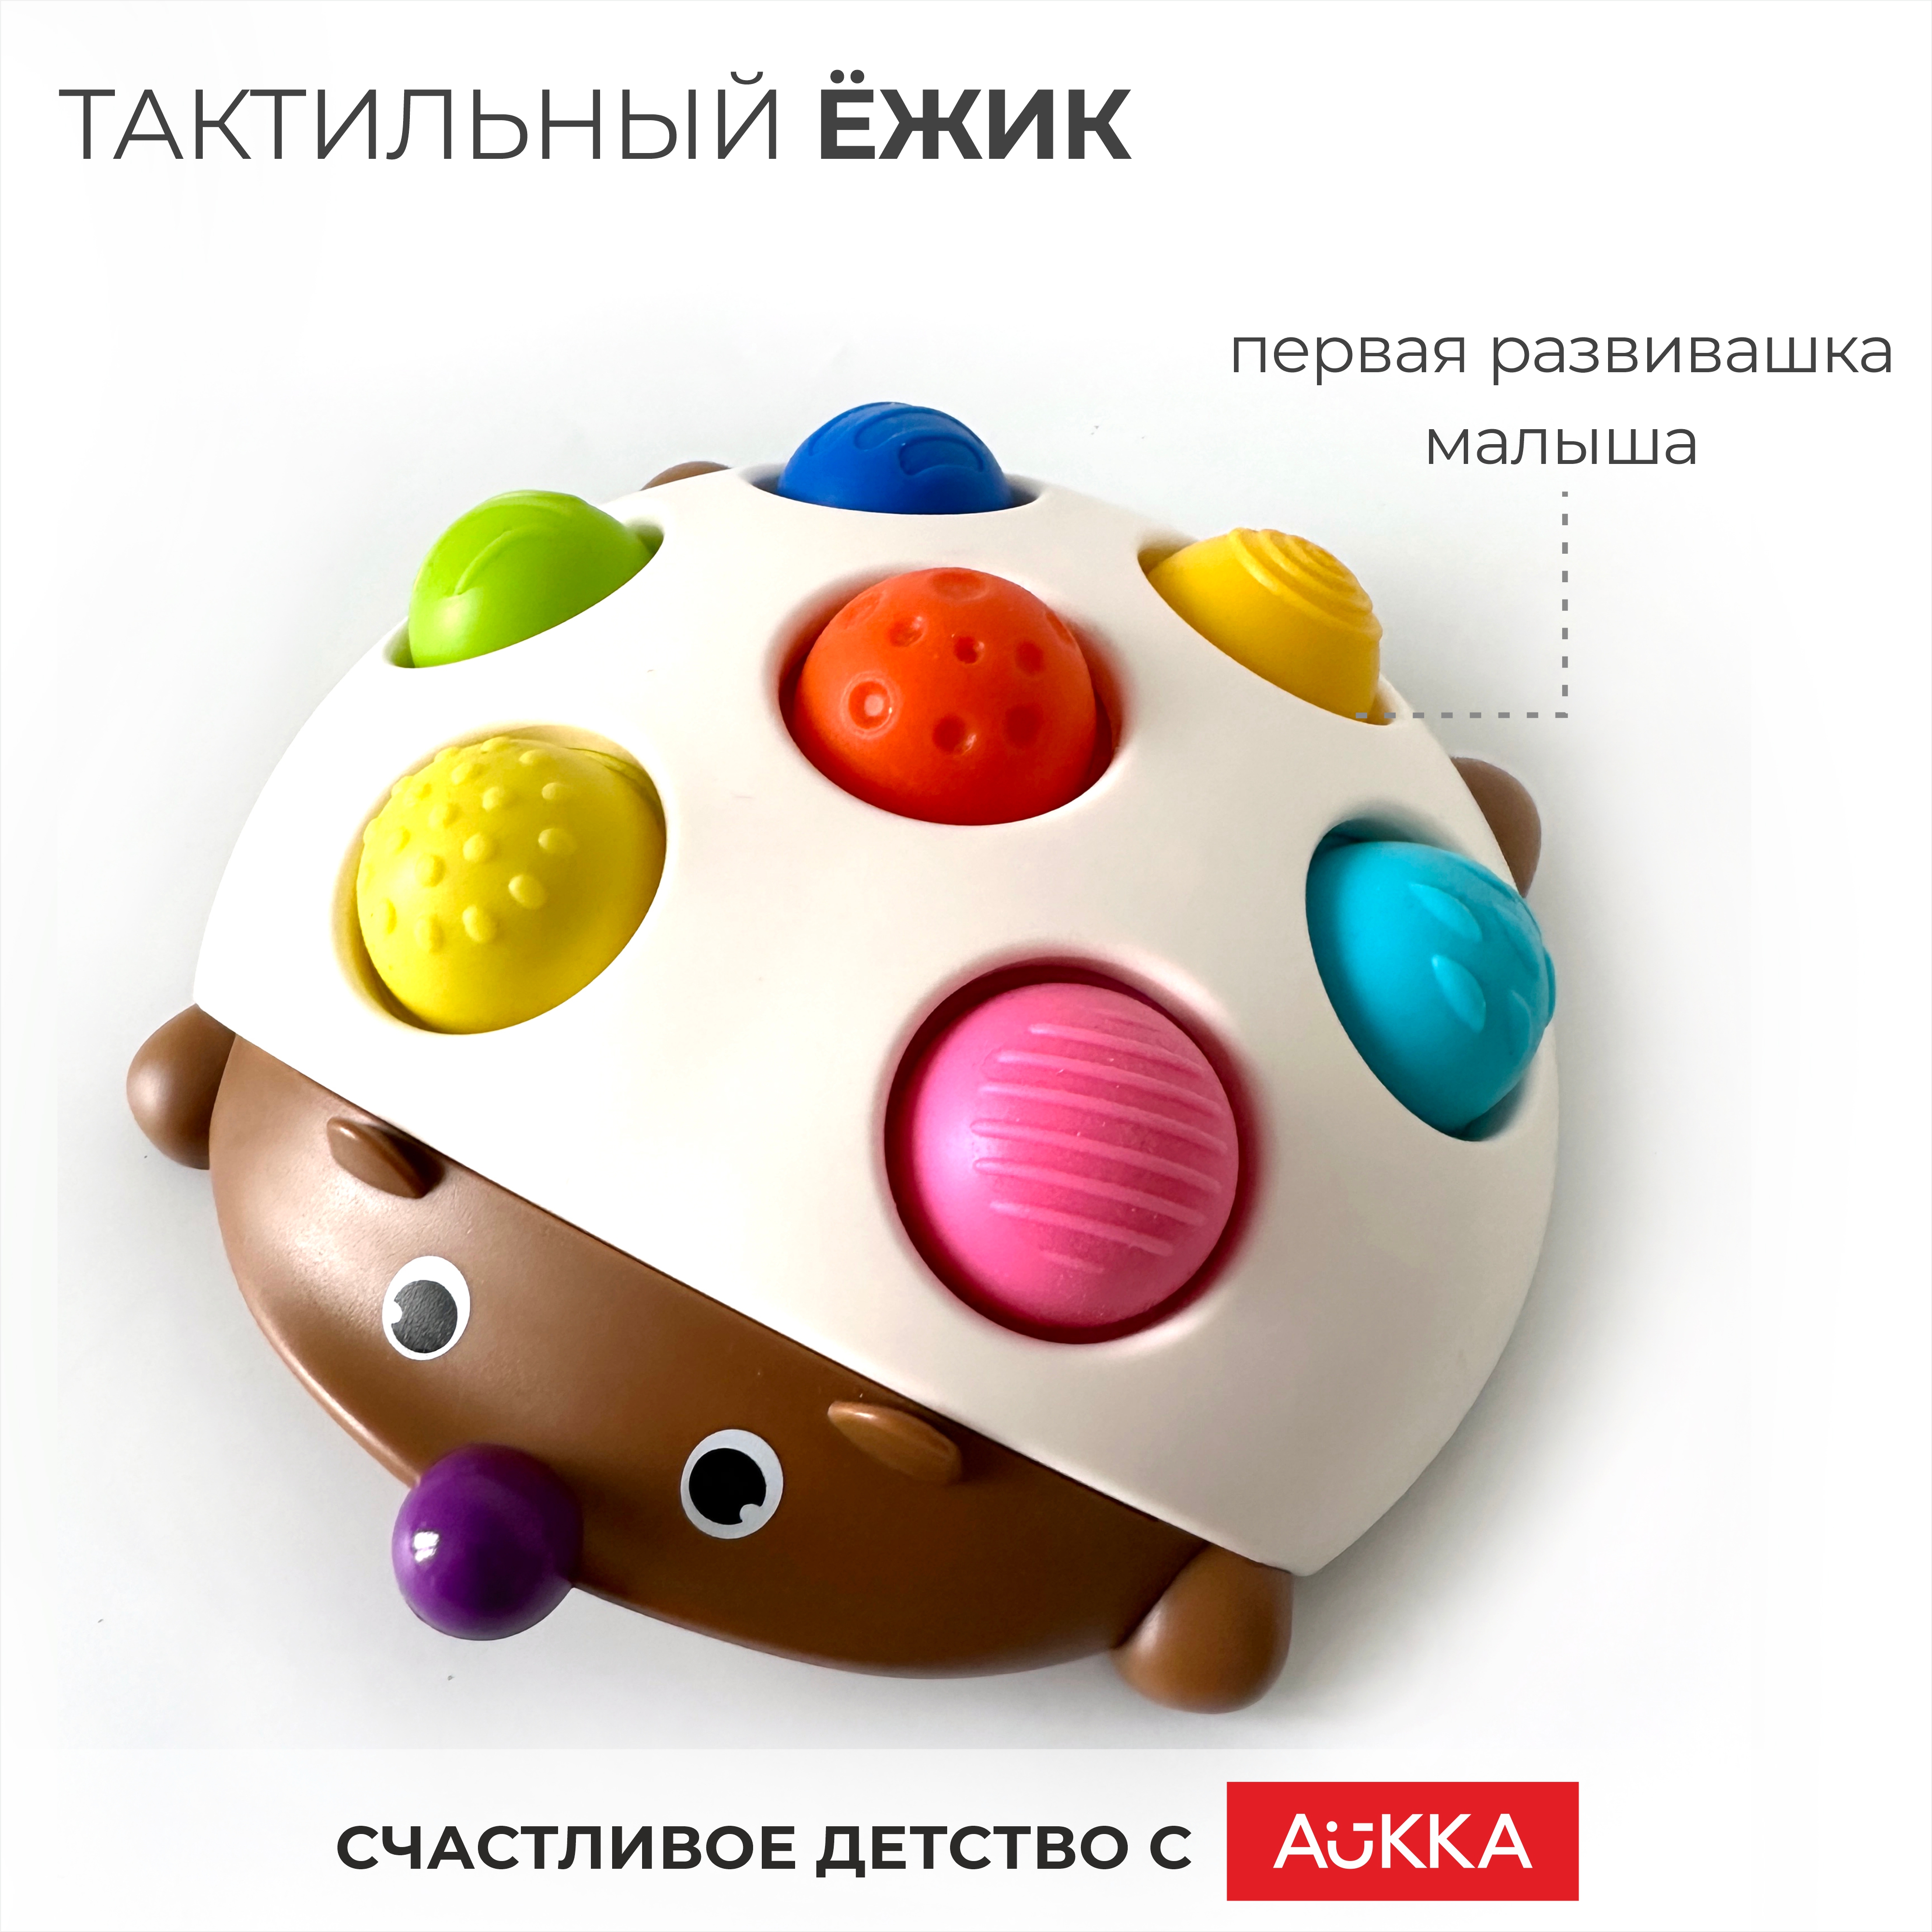 Развивающая игрушка AUKKA тактильная игра для детей Ежик Финн антистресс белый - фото 1